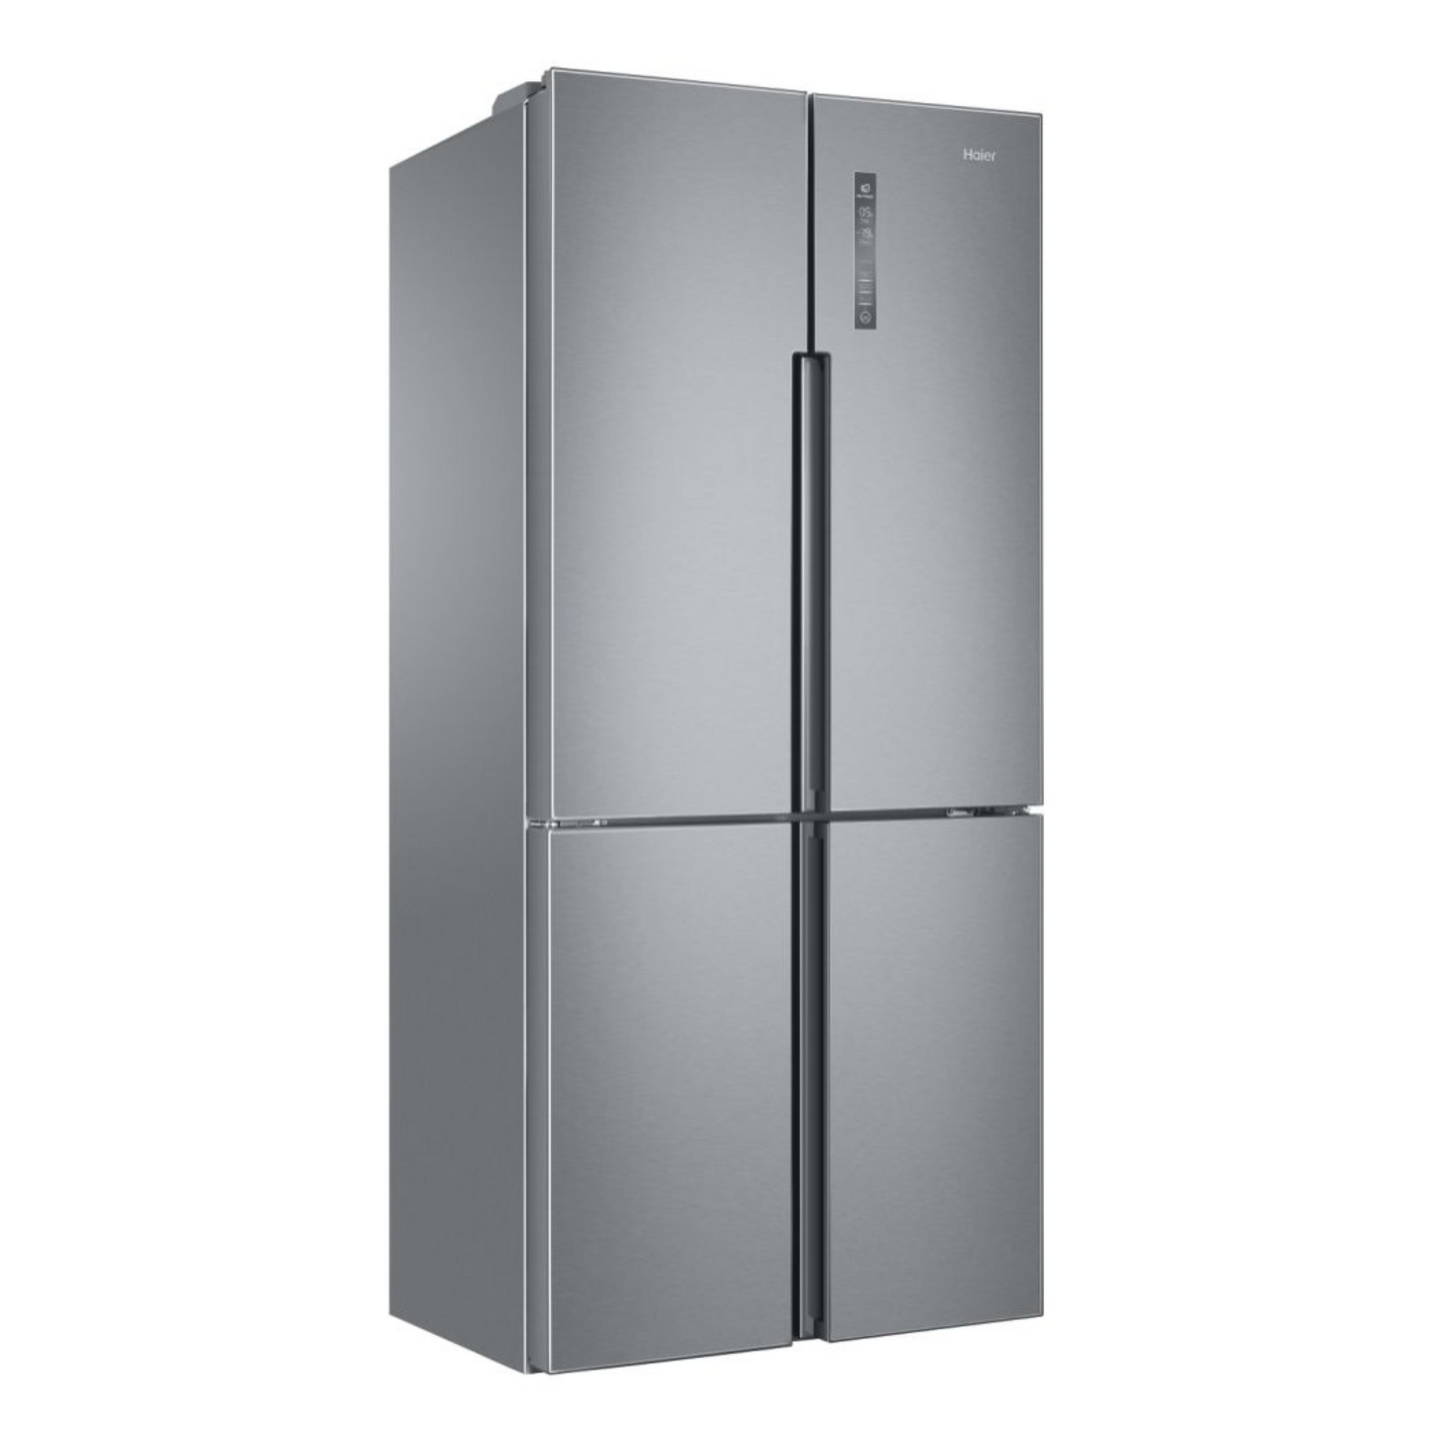 Haier 500L Refrigerator, HTF-456DM6